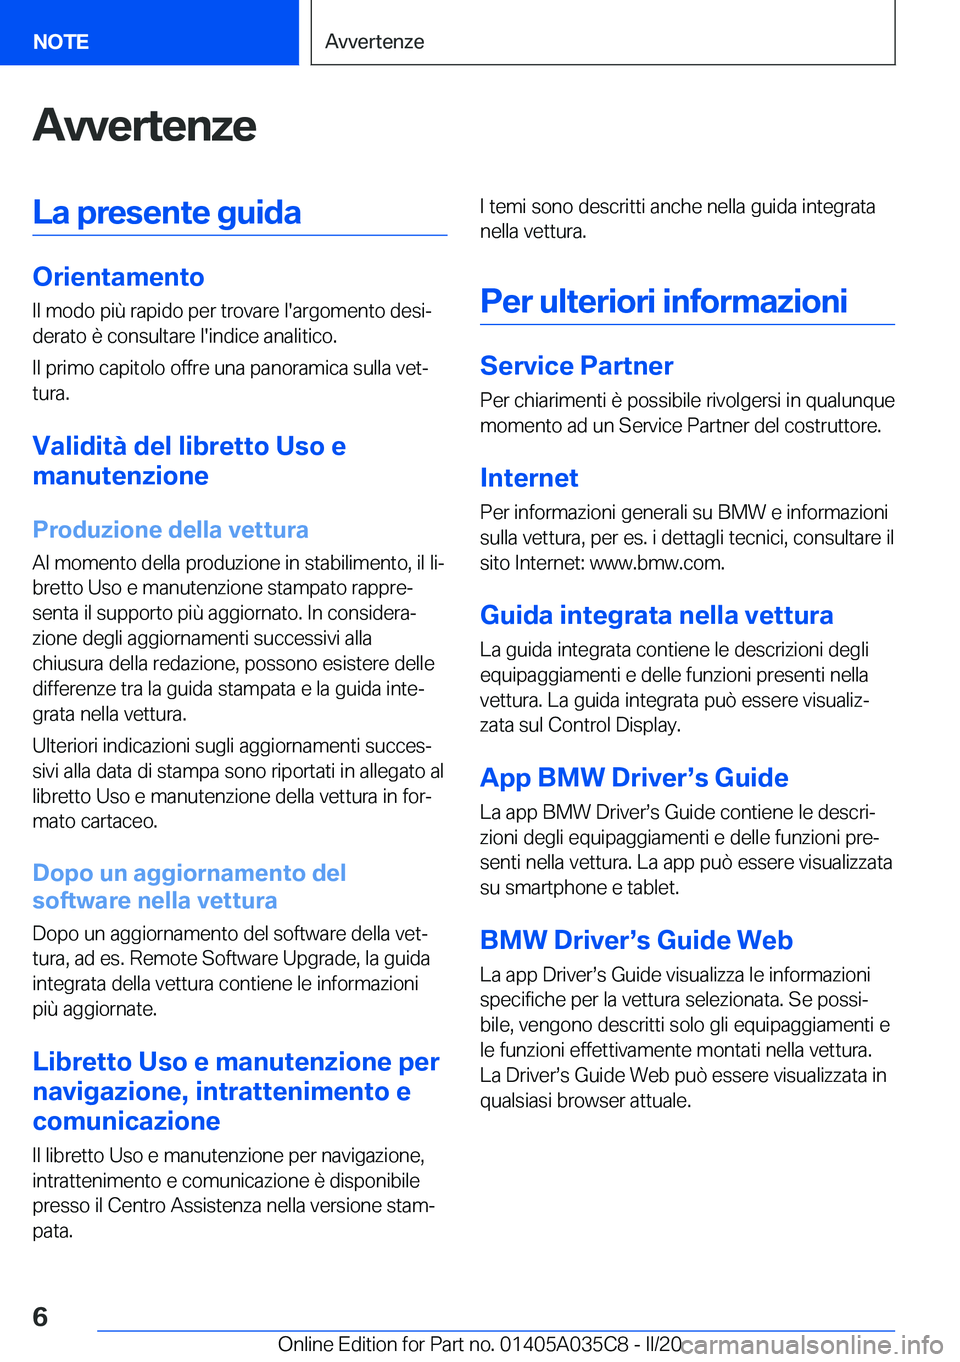 BMW X4 2020  Libretti Di Uso E manutenzione (in Italian) �A�v�v�e�r�t�e�n�z�e�L�a��p�r�e�s�e�n�t�e��g�u�i�d�a
�O�r�i�e�n�t�a�m�e�n�t�o�I�l��m�o�d�o��p�i�